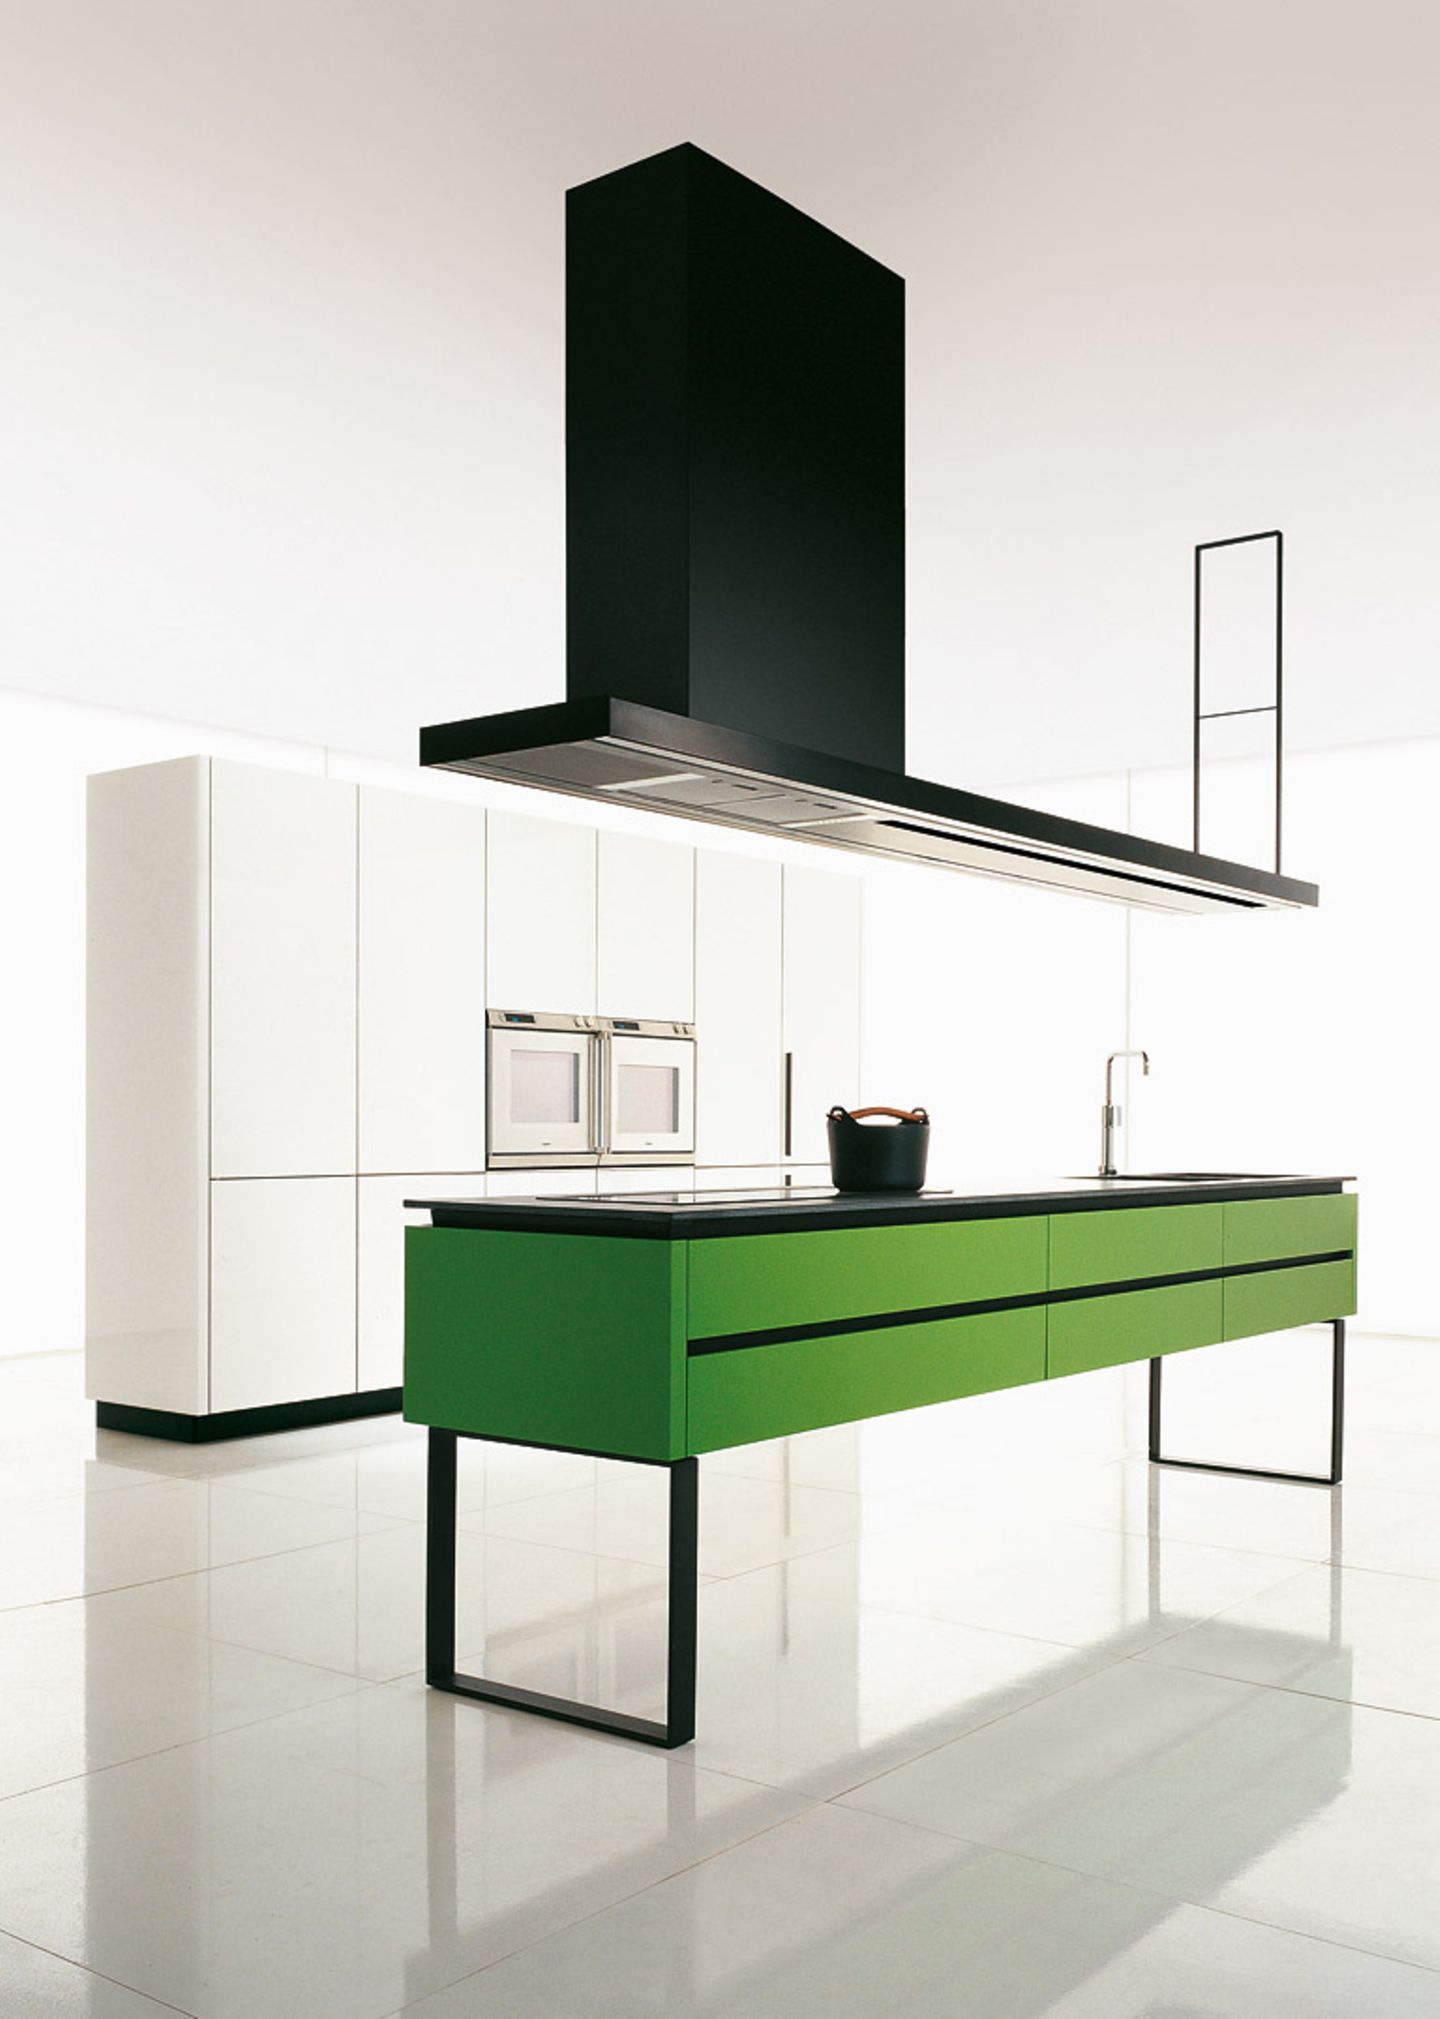 Küche "Hi-Line" von Dada/Molteni, Design: Ferruccio Laviani